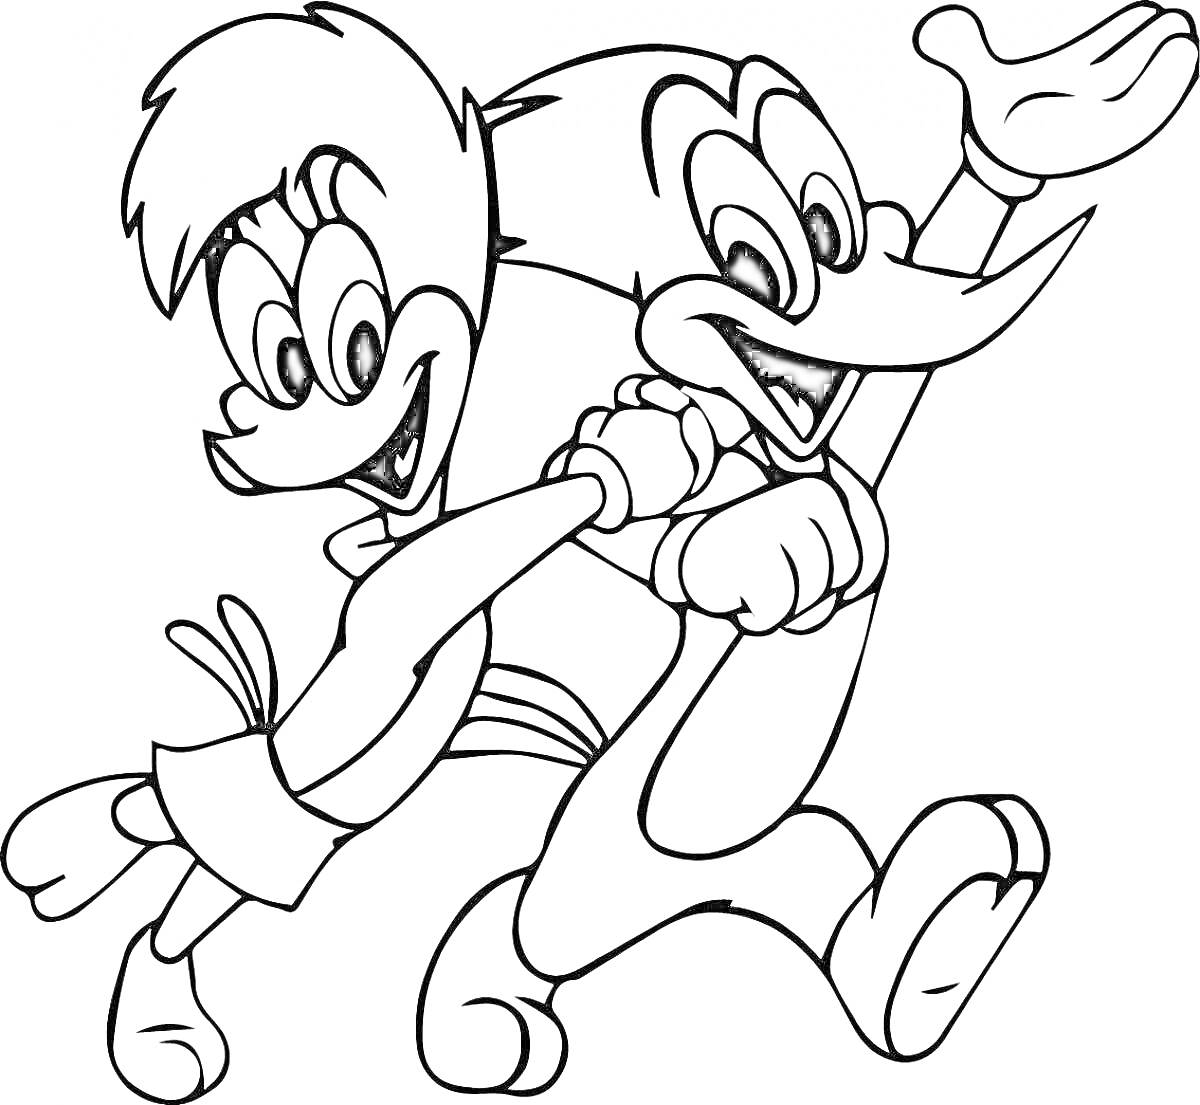 Два мультяшных персонажа бегут, один из которых машет рукой